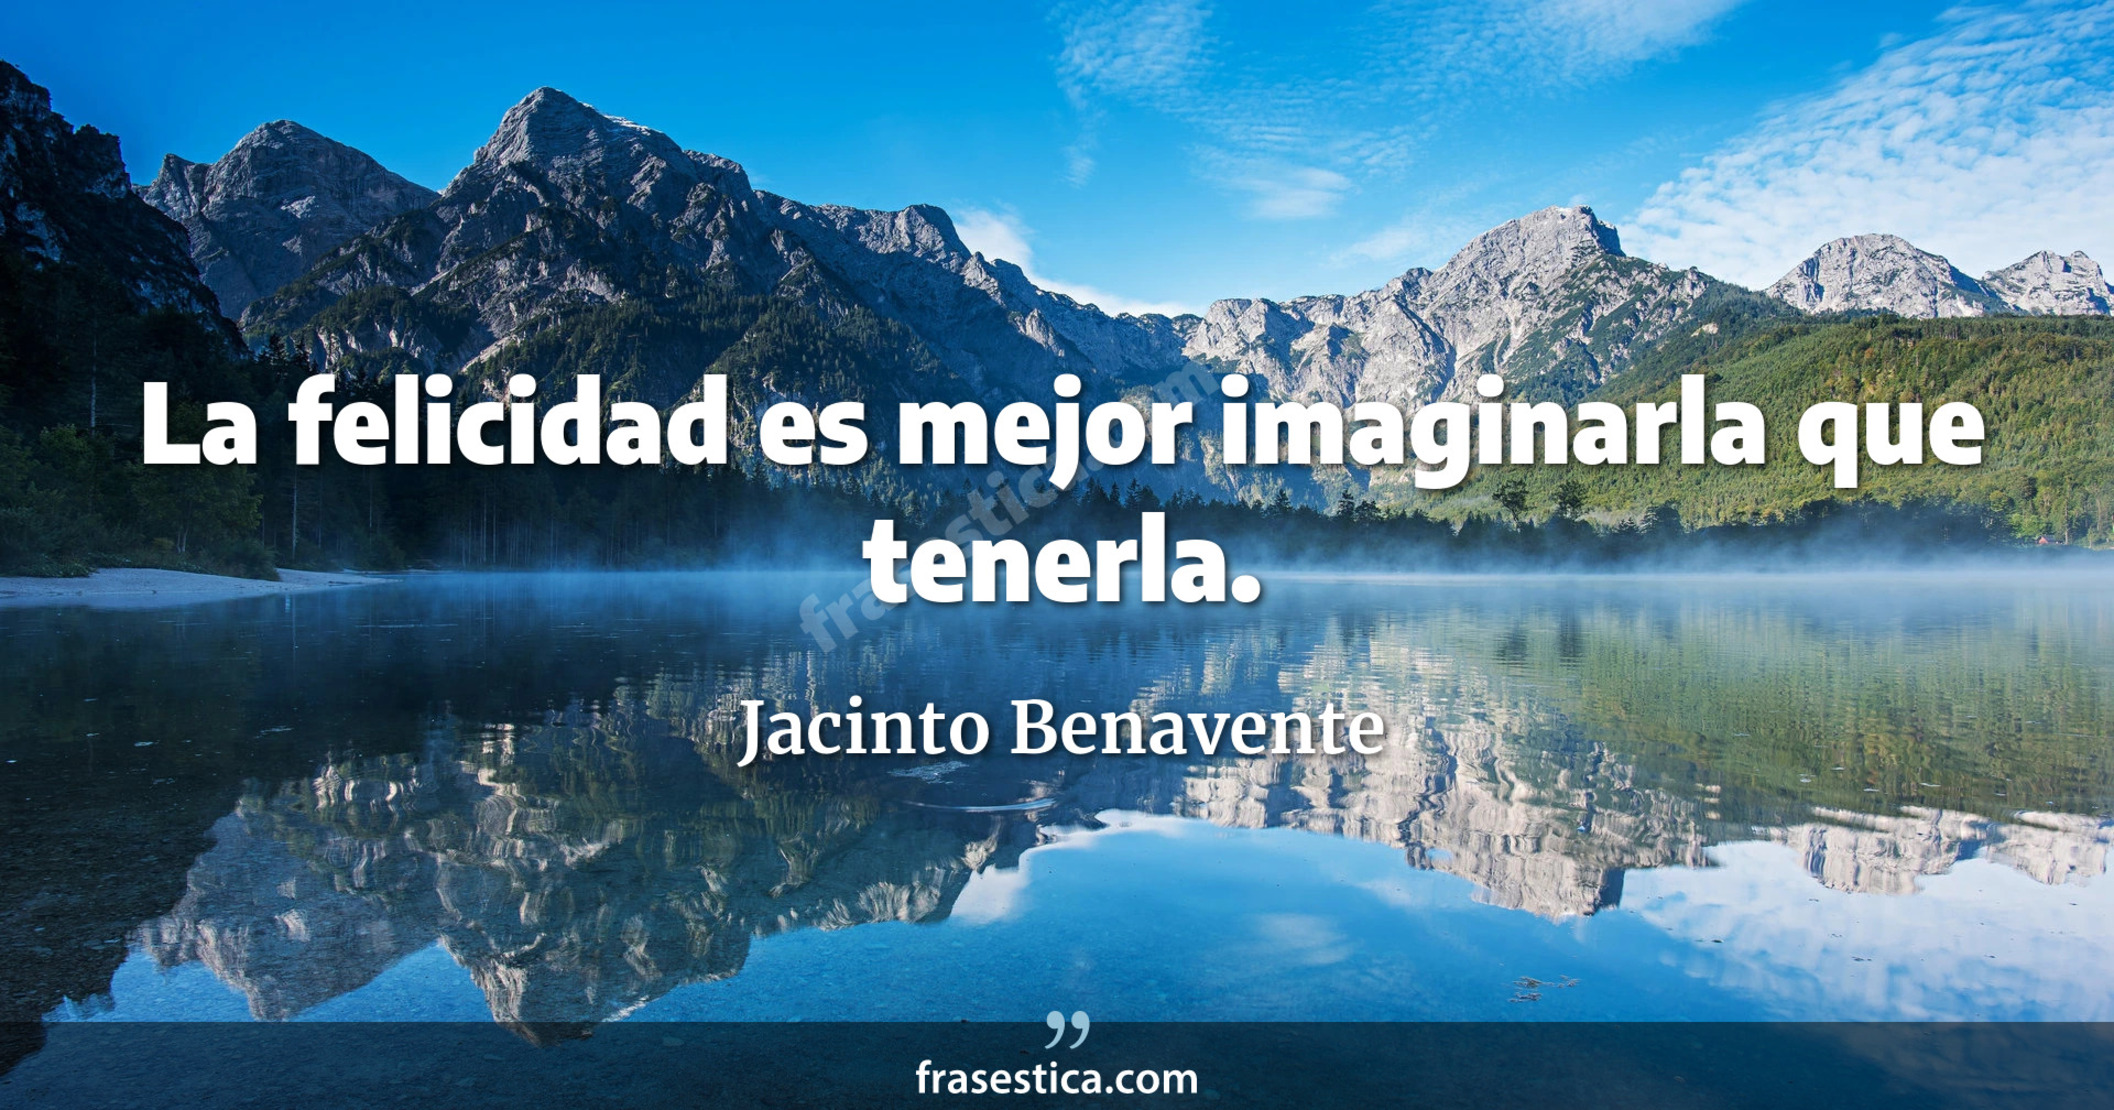 La felicidad es mejor imaginarla que tenerla. - Jacinto Benavente